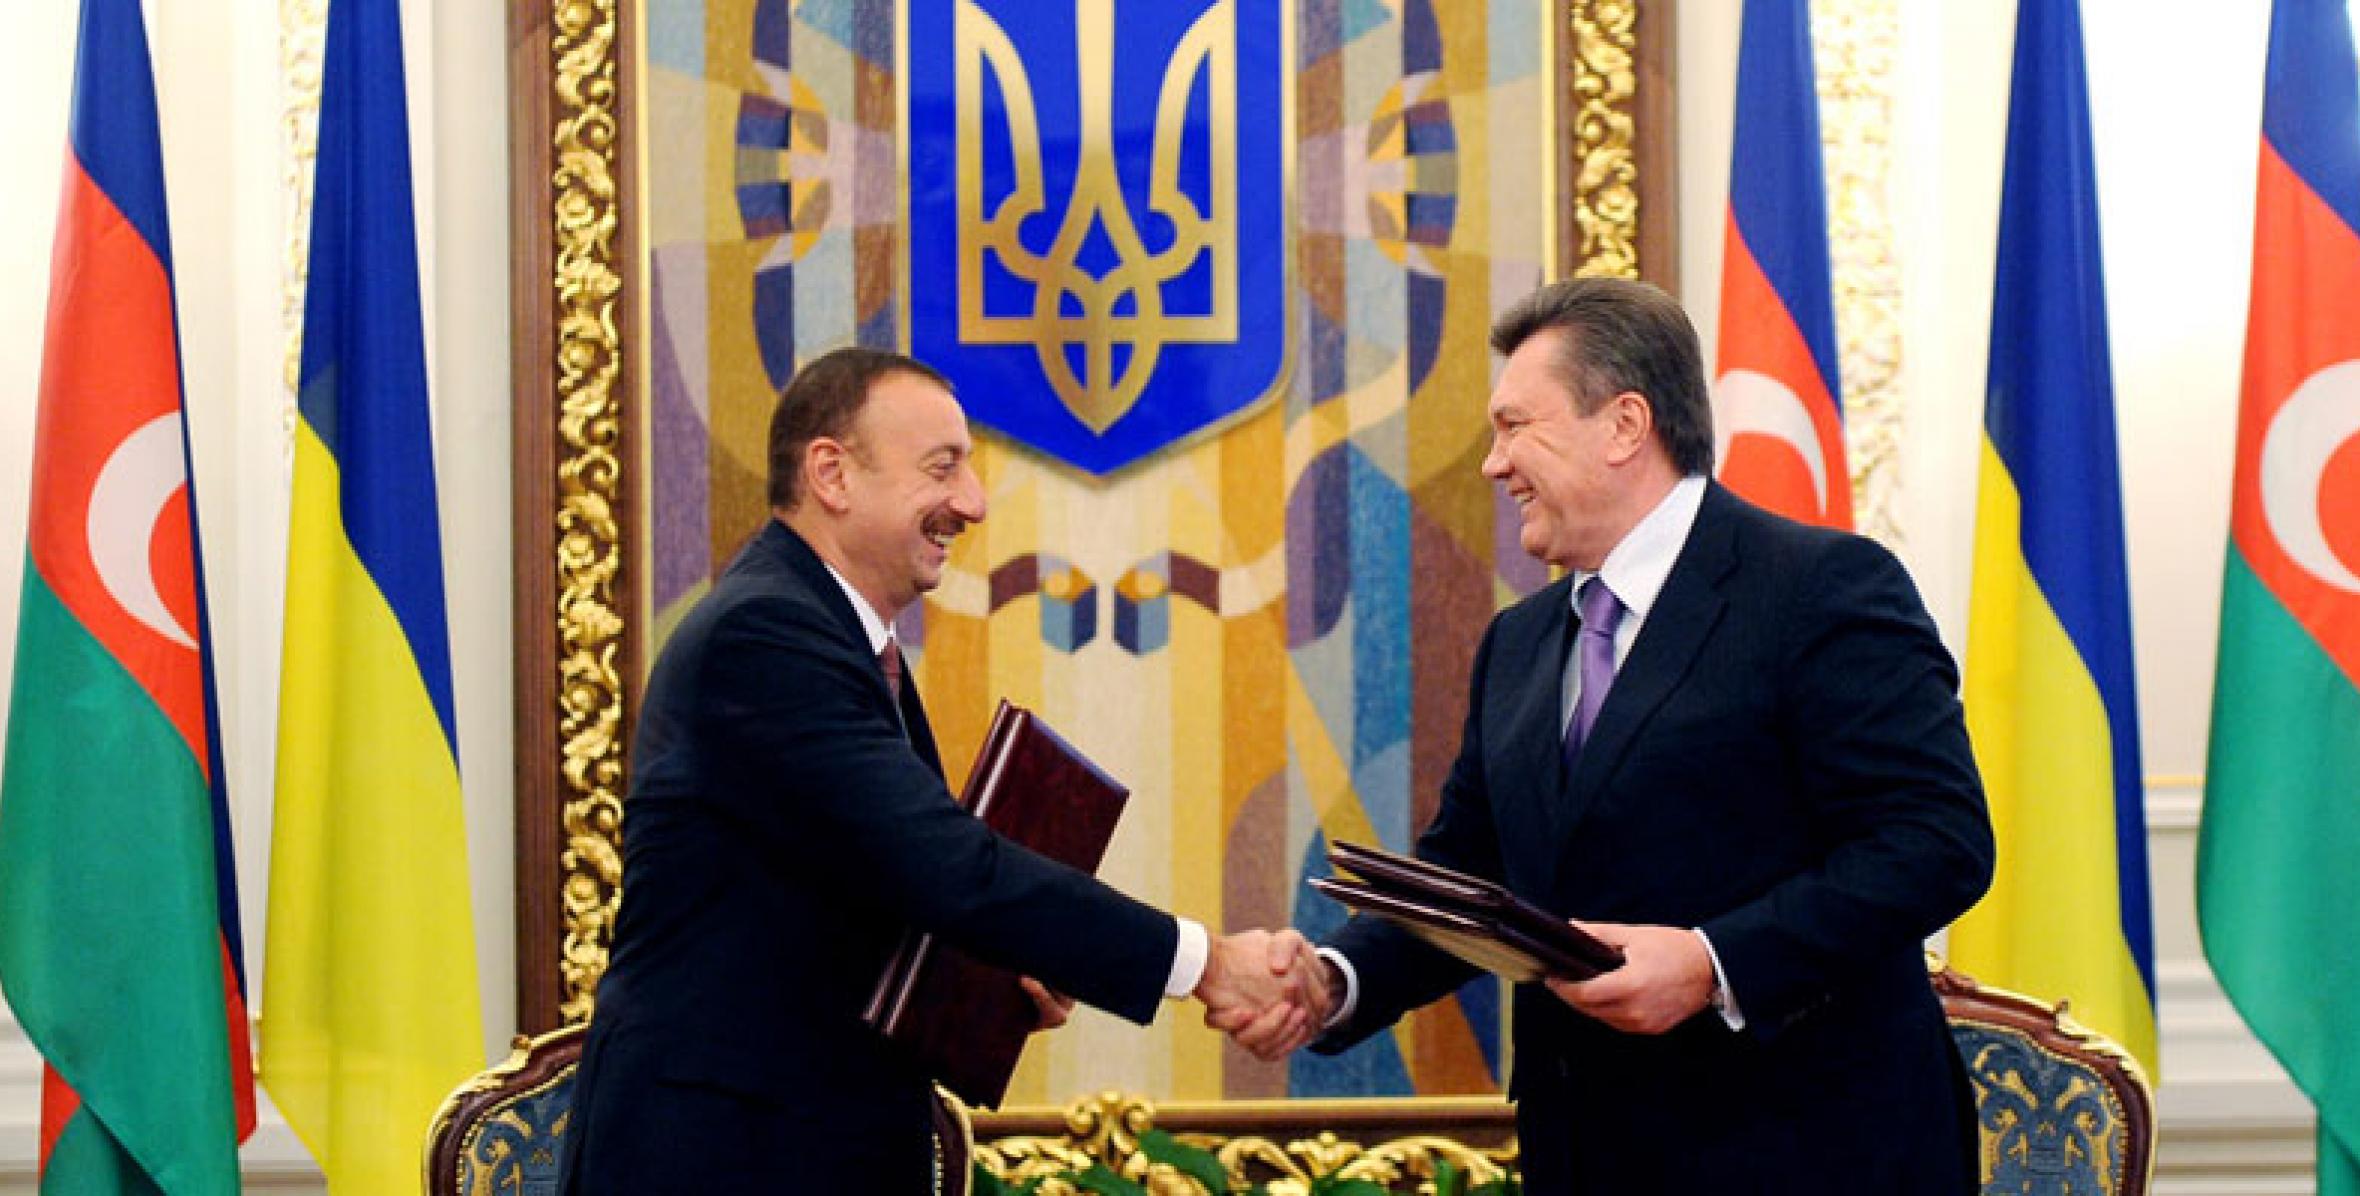 Официальный визит Ильхама Алиева в Украину